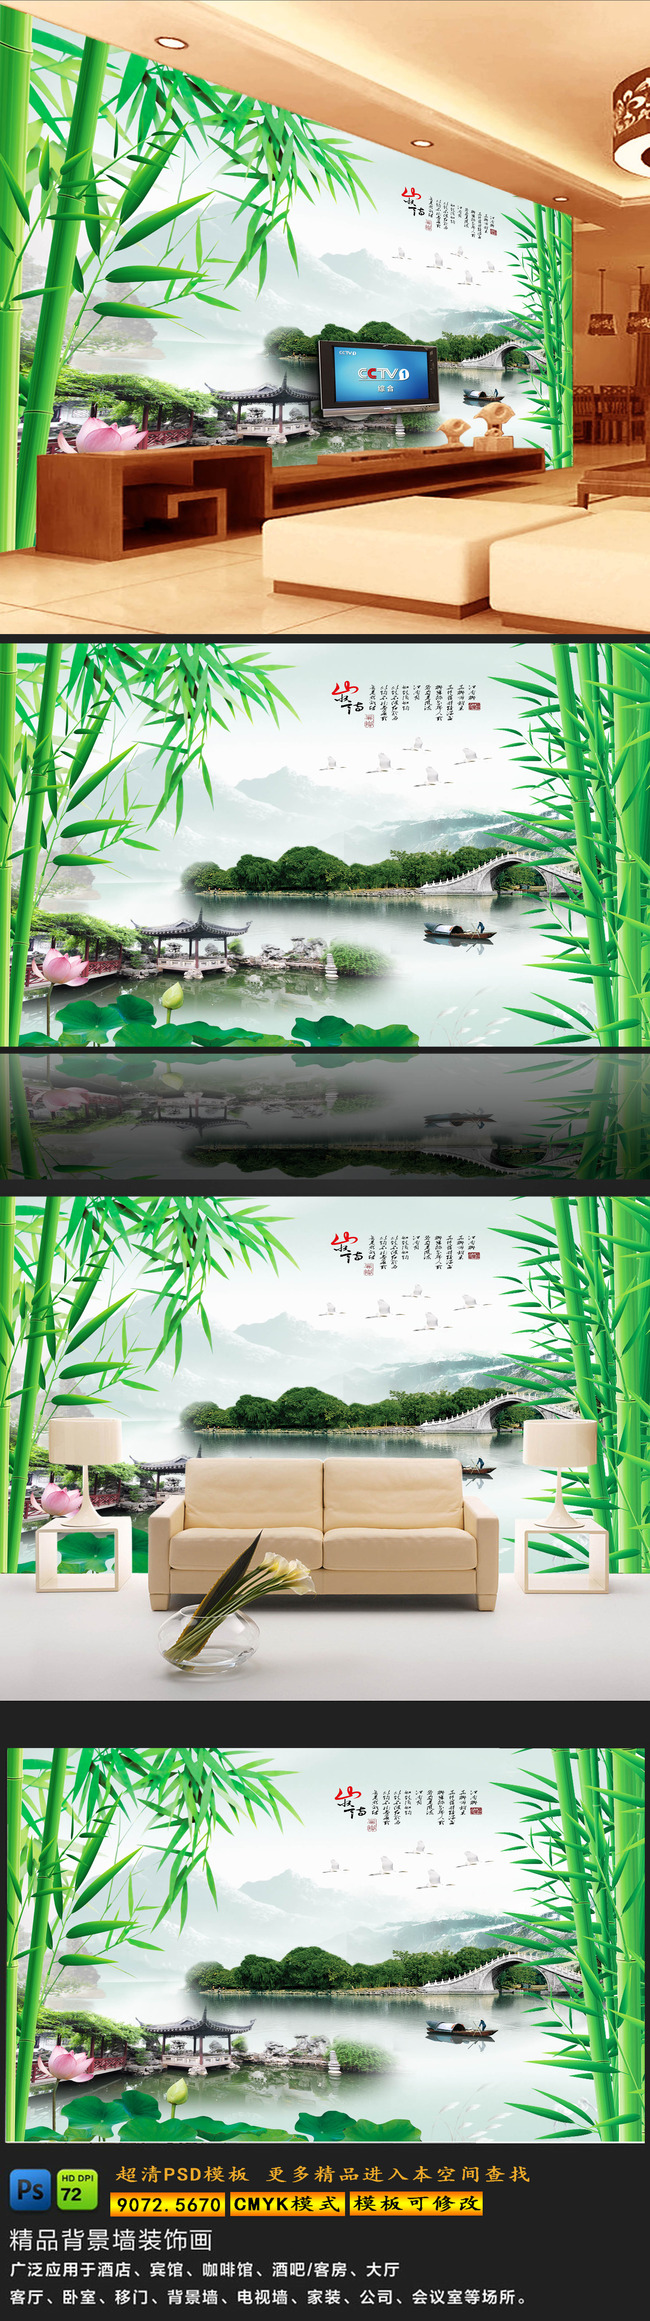 【psd】美丽山水风景江南竹林电视背景墙